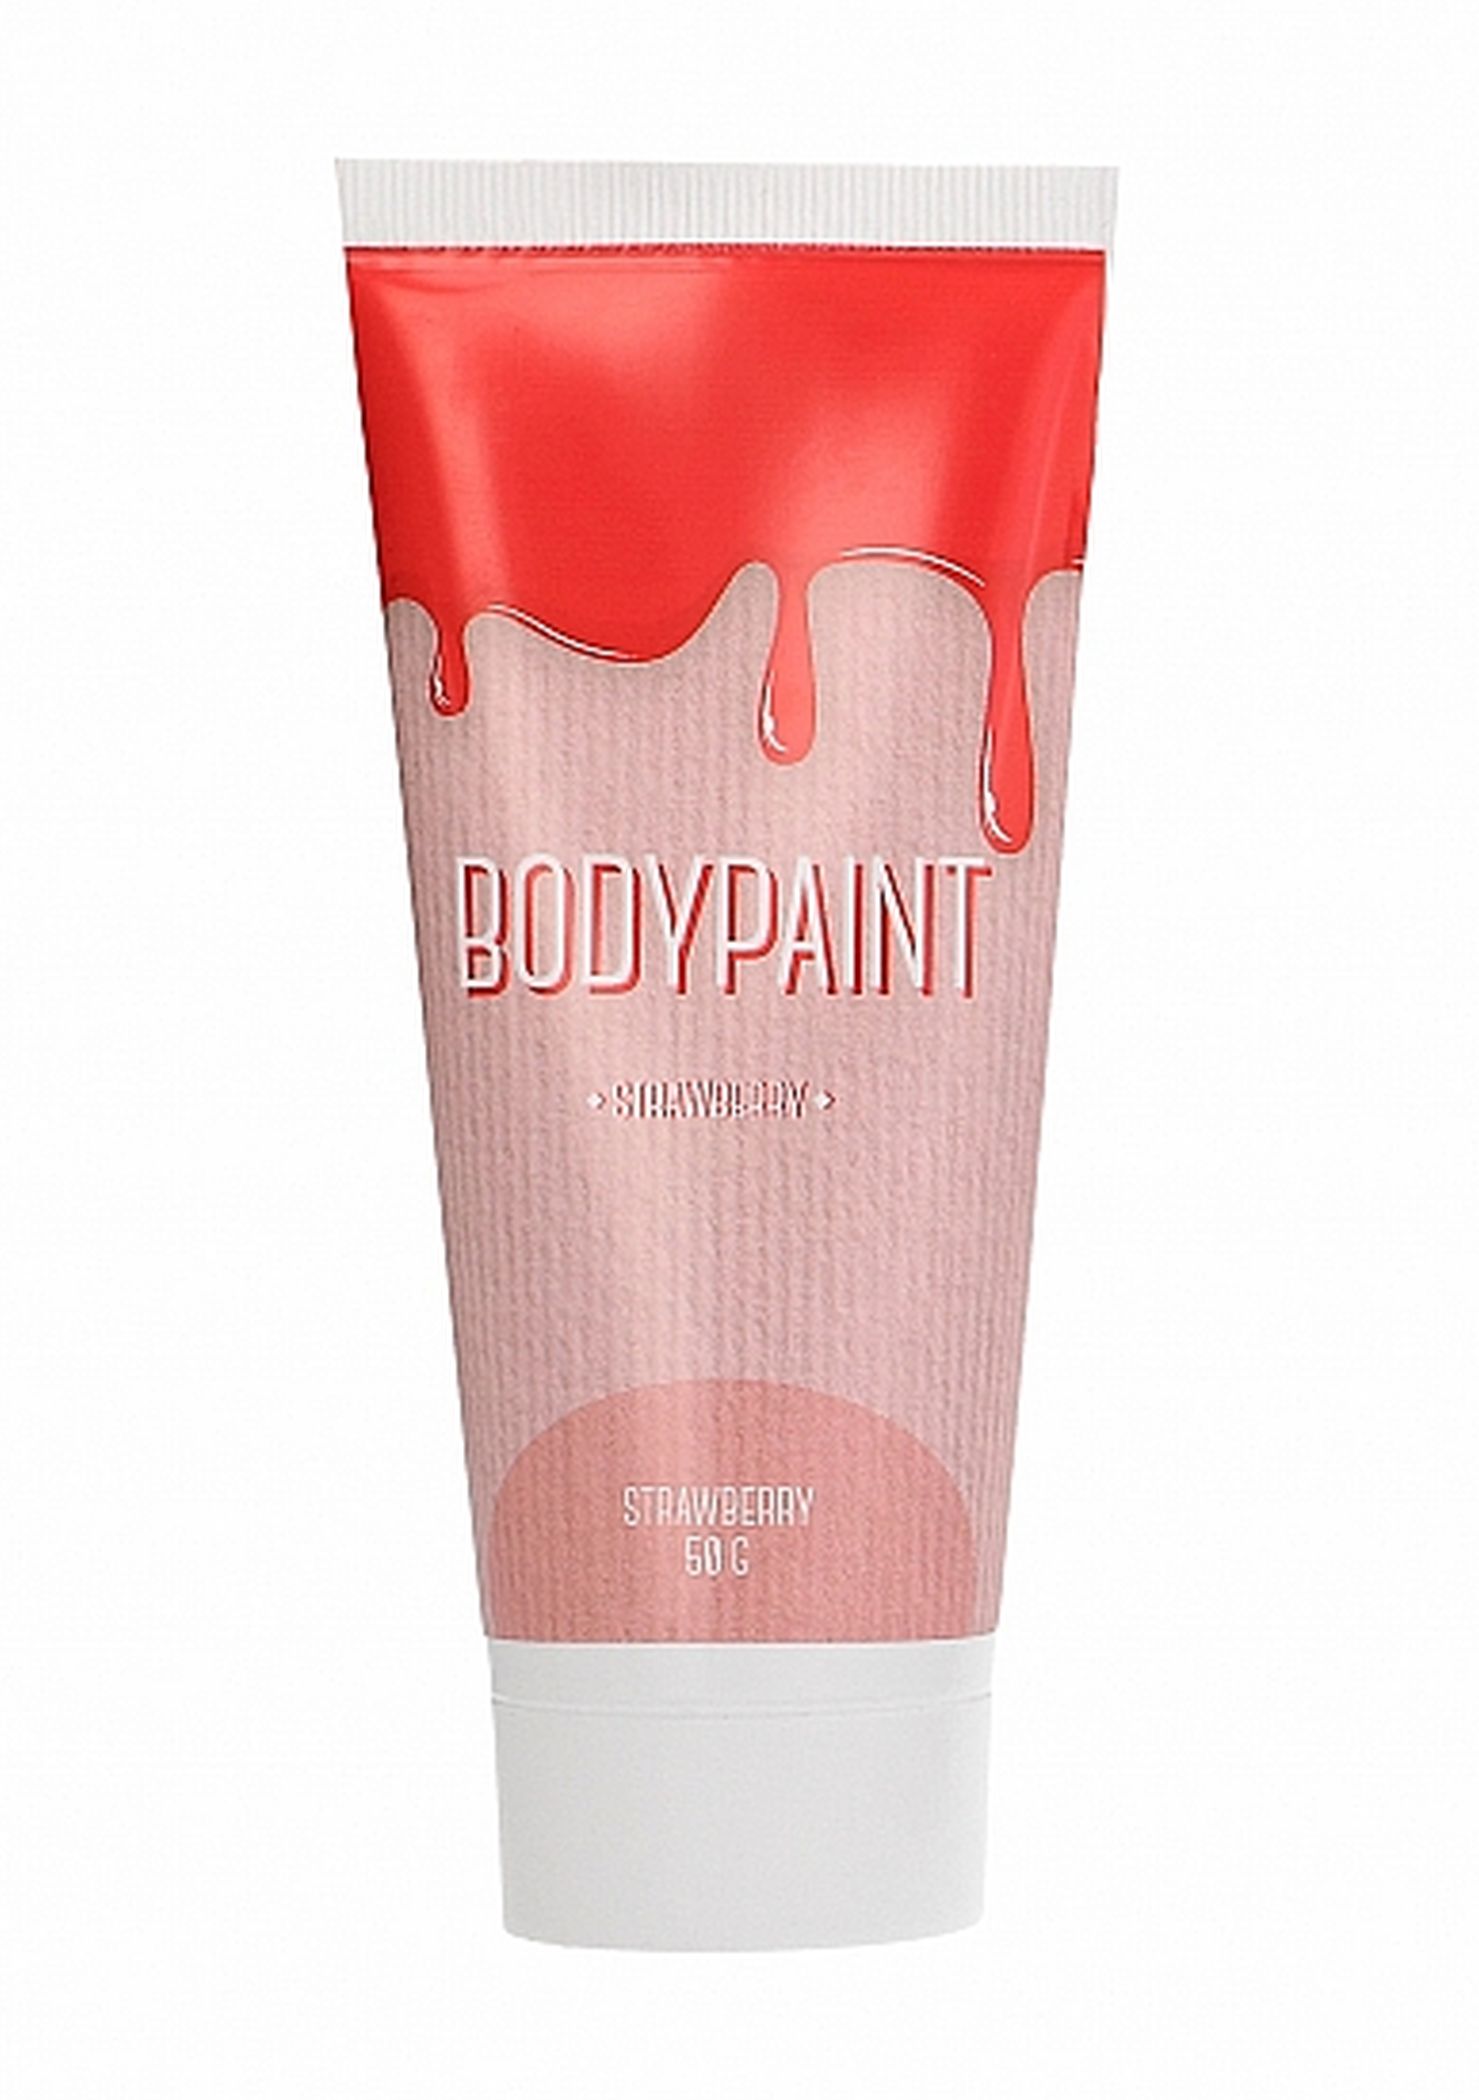 Bodypaint farba do malowania ciała truskawka 50g